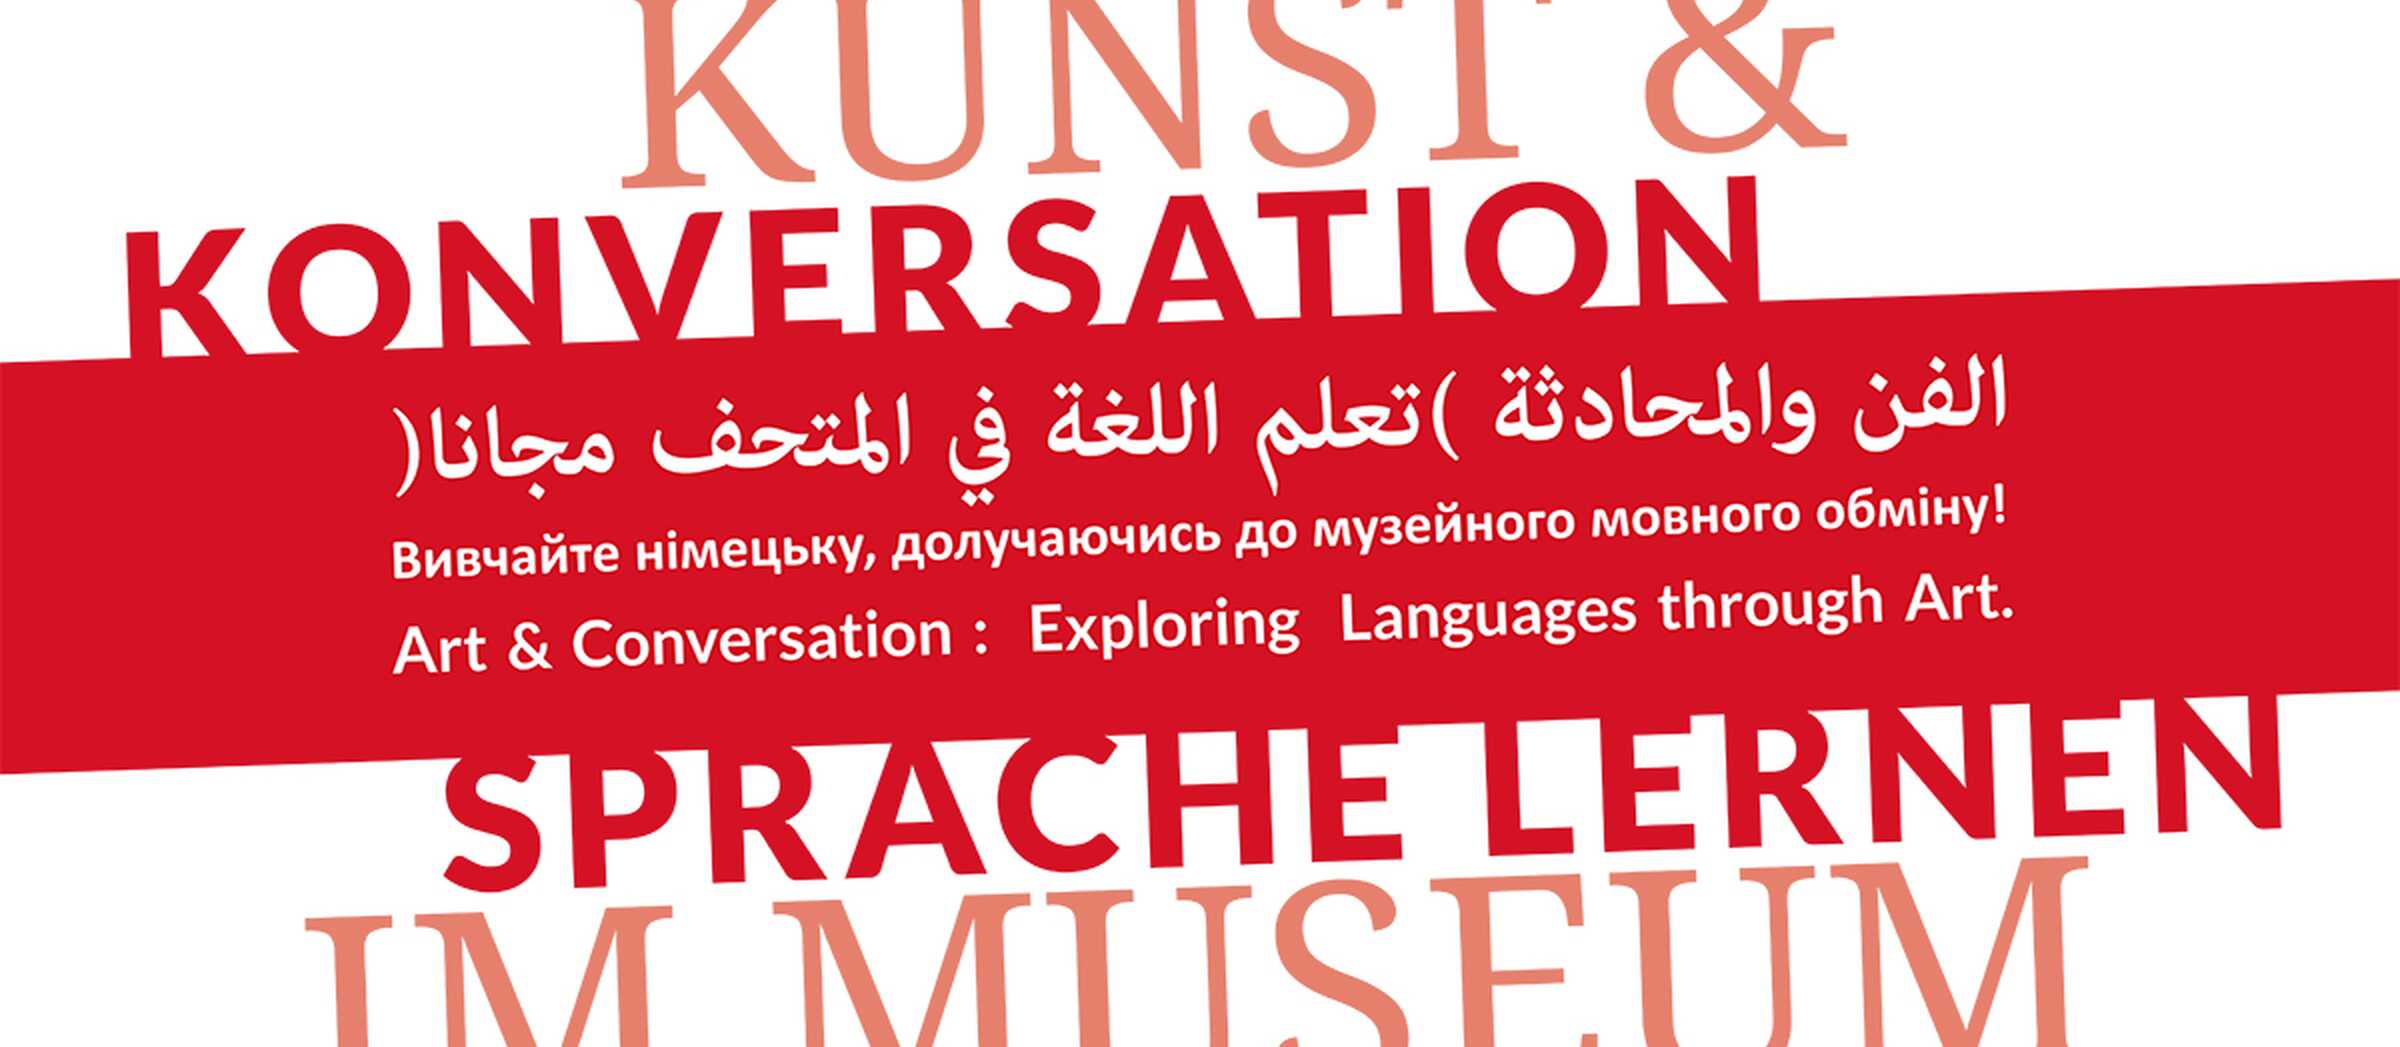 Schriftzug "Kunst & Konversation: Sprache lernen im Museum" auf Deutsch, Englisch, Arabisch und Ukrainisch